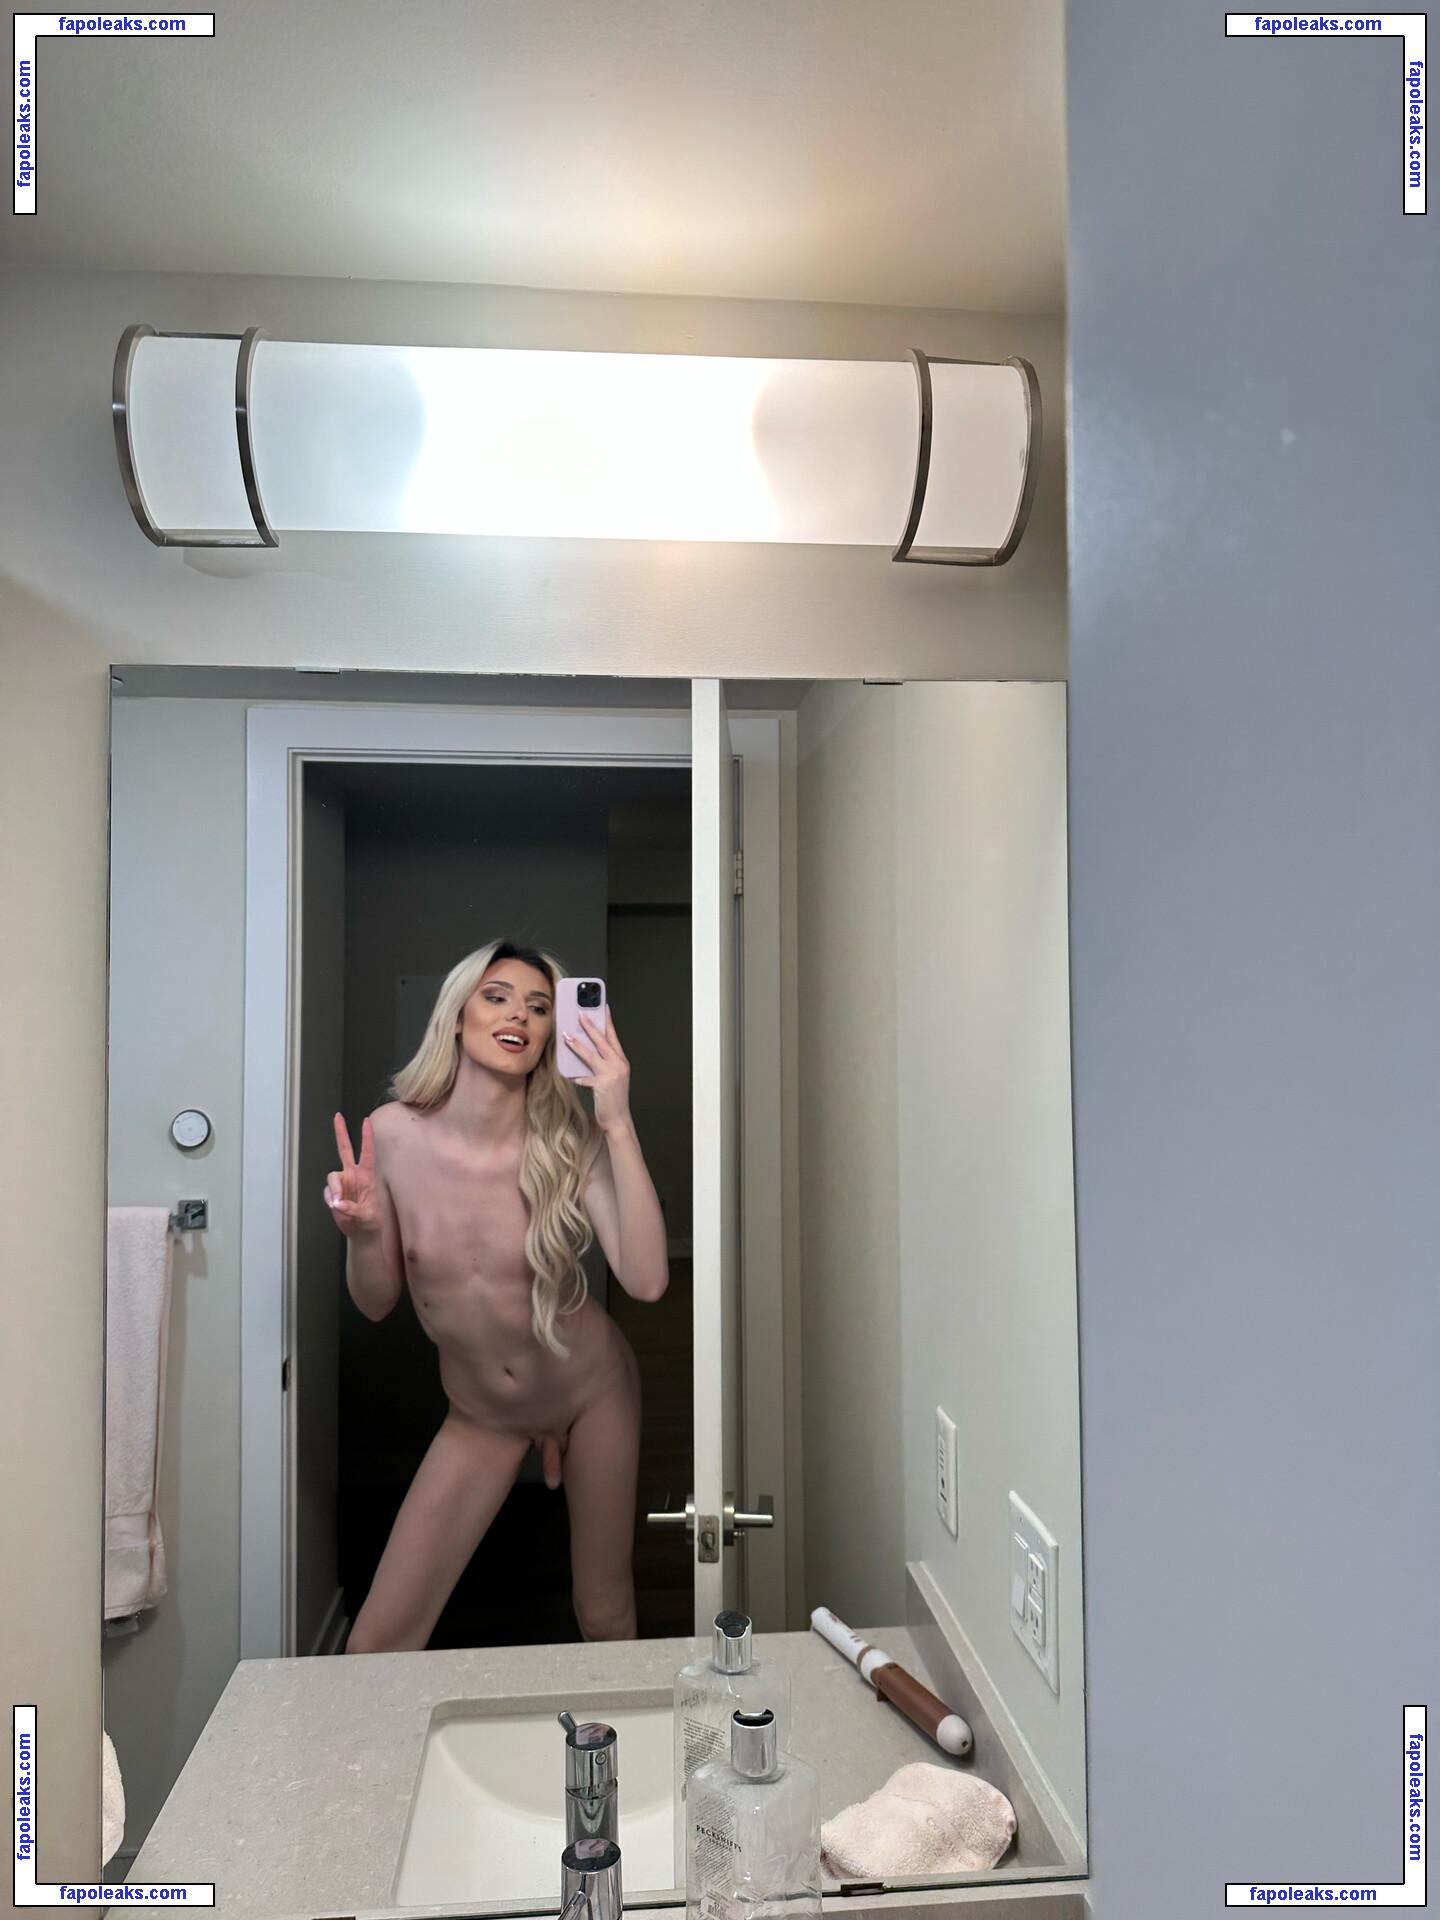 Emma Jonnz / Inopocolleyyu / emmajonnzz nude photo #0006 from OnlyFans